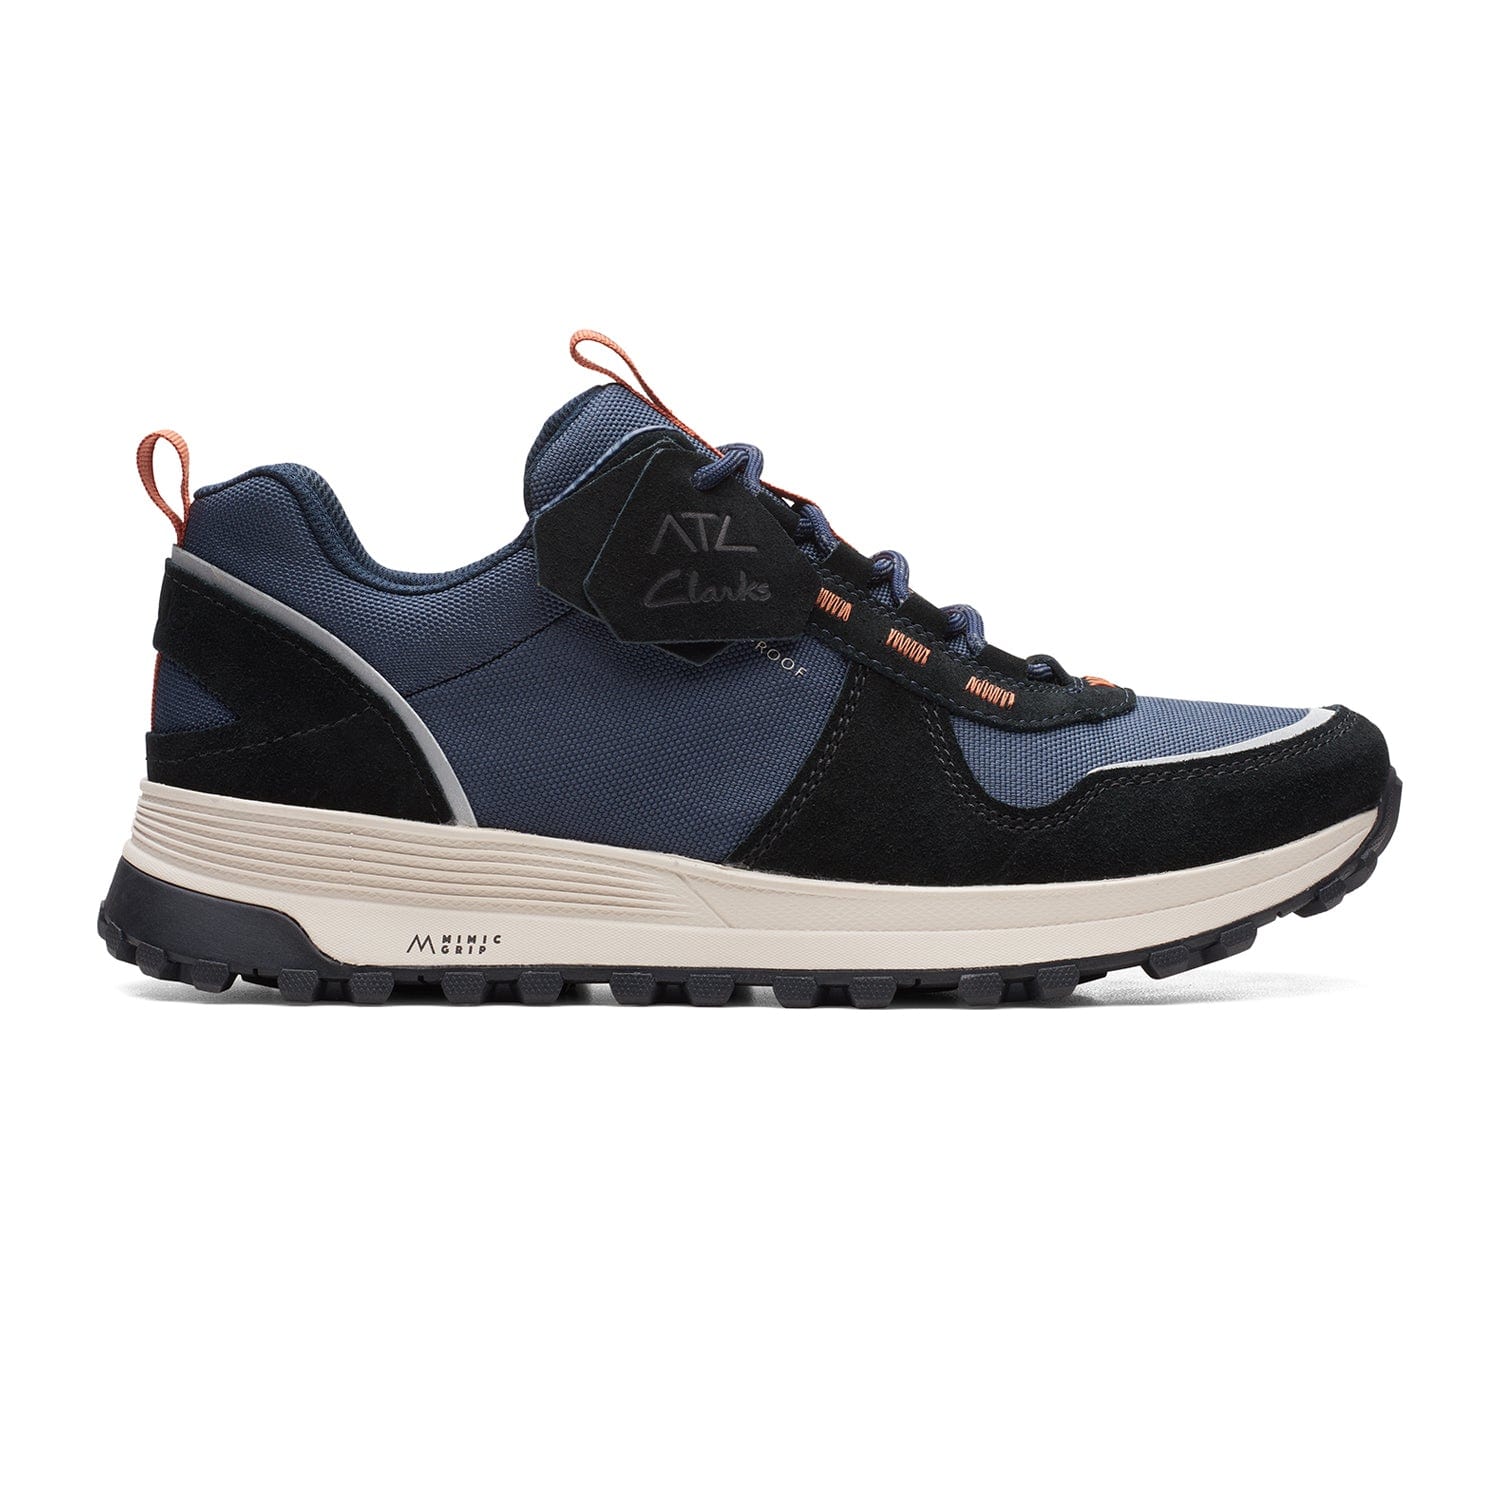 Clarks ATL Trek Walk Shoes - Navy Combi - 261657397 - G Width (Standard Fit)